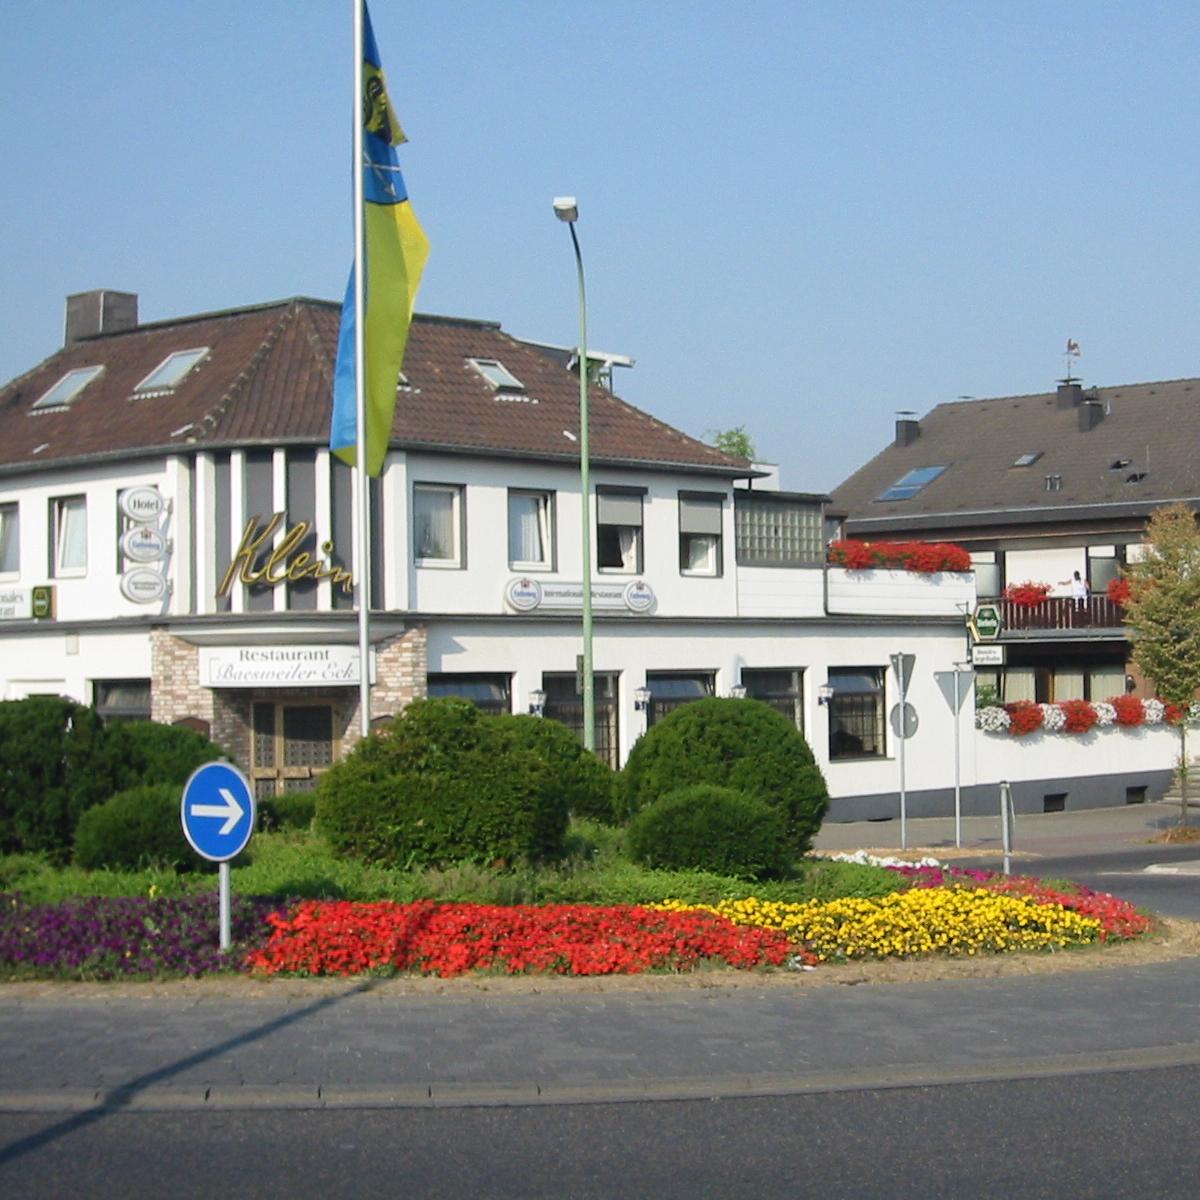 Restaurant "Hotel Klein" in Baesweiler